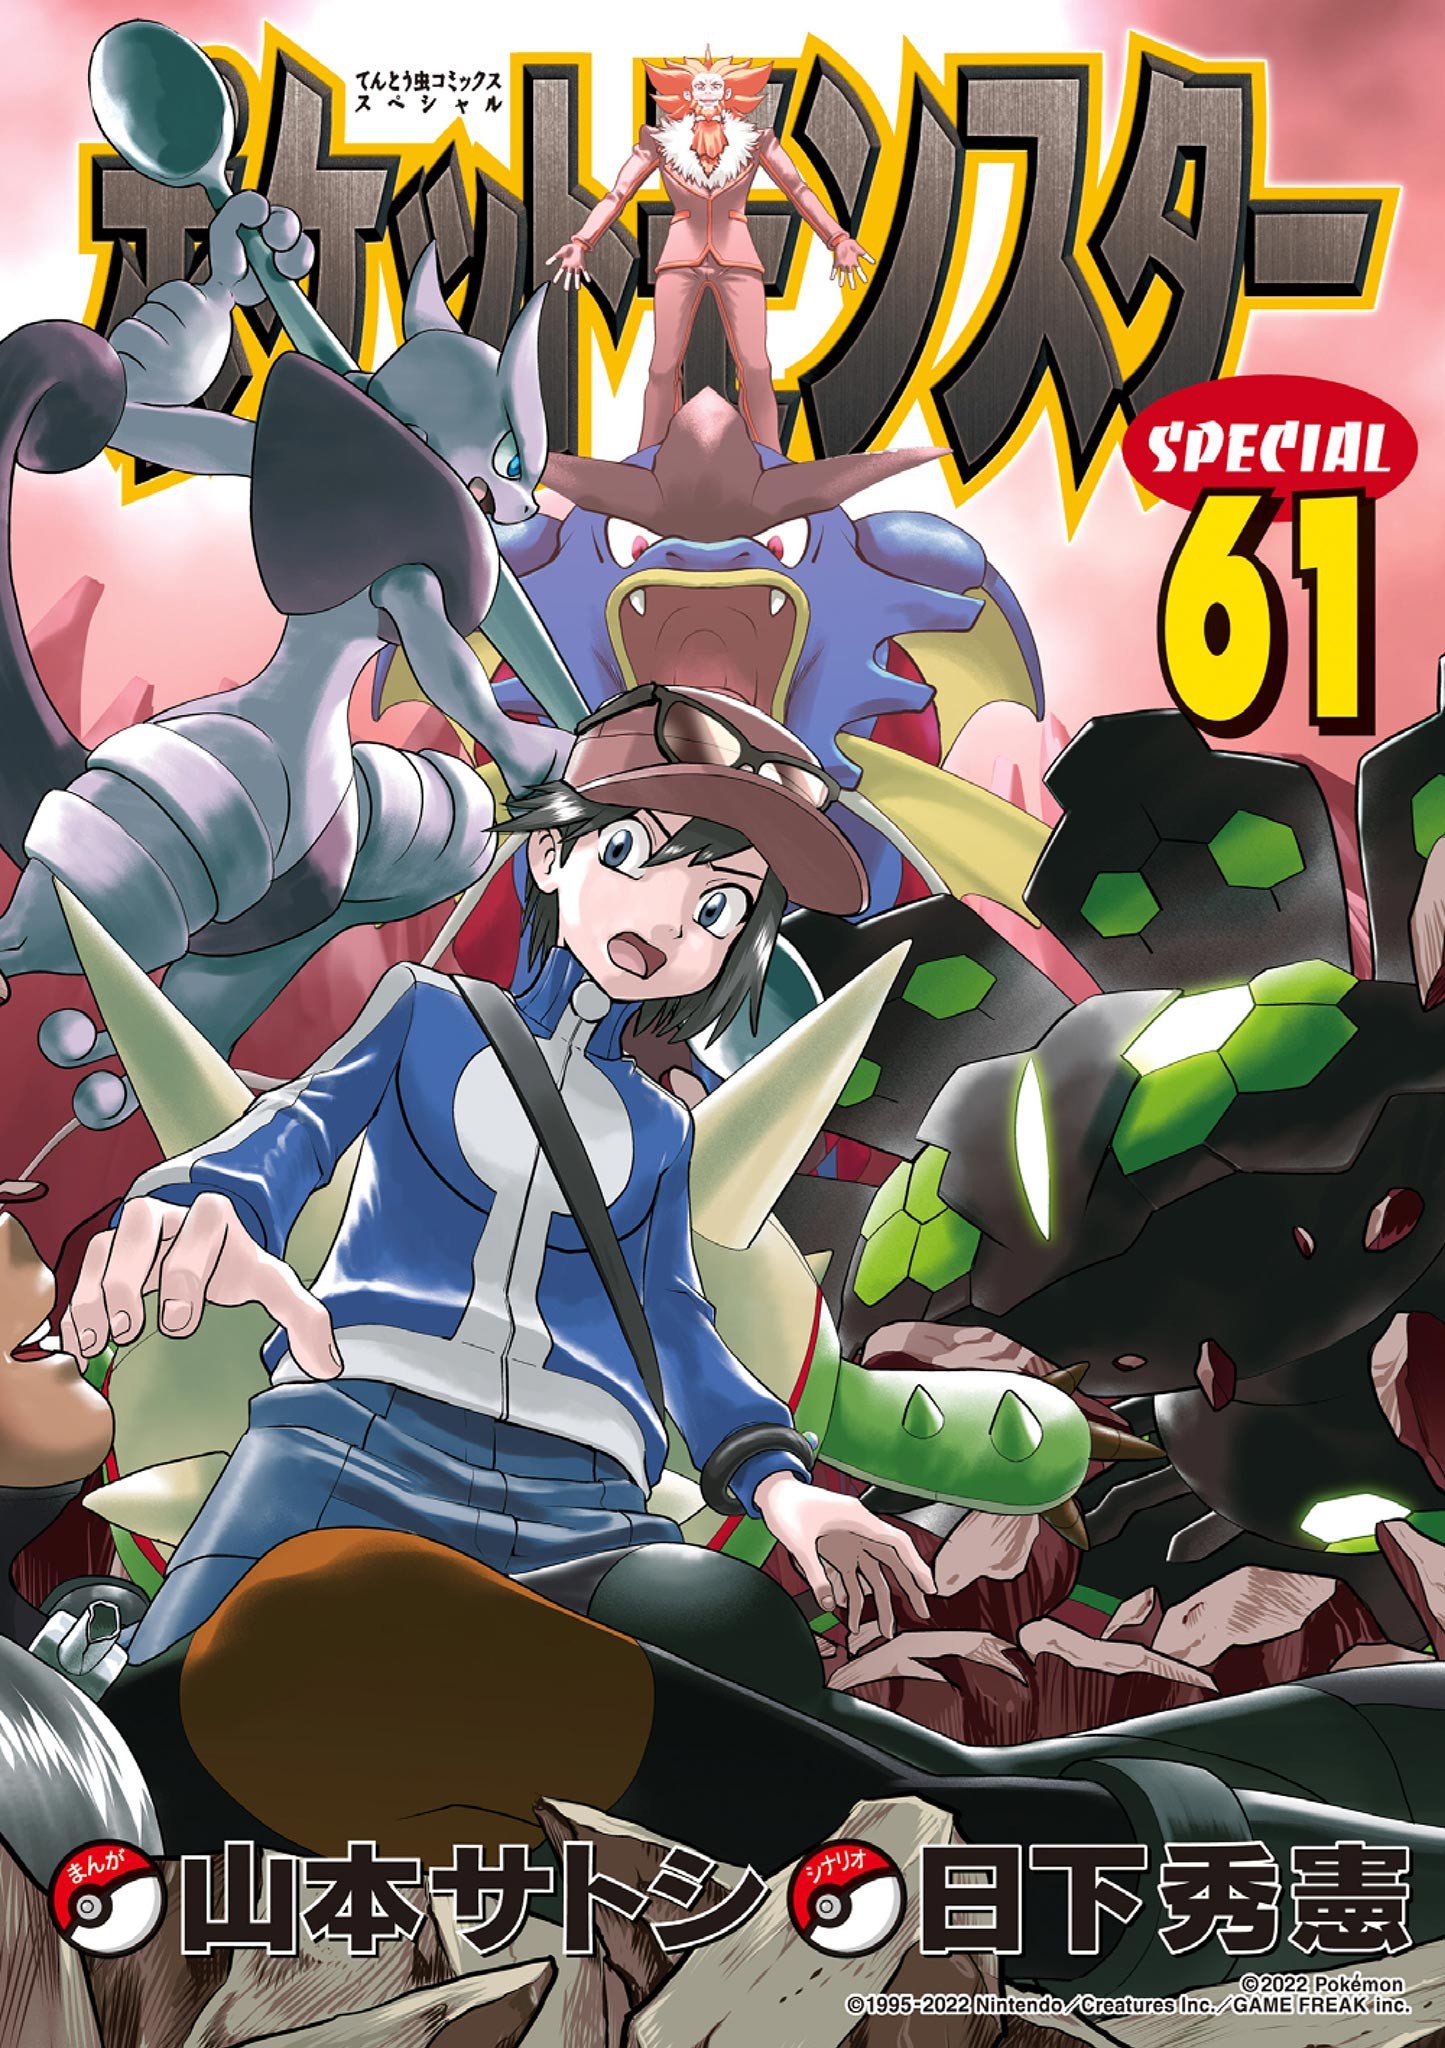 Pokémon Special cover 3